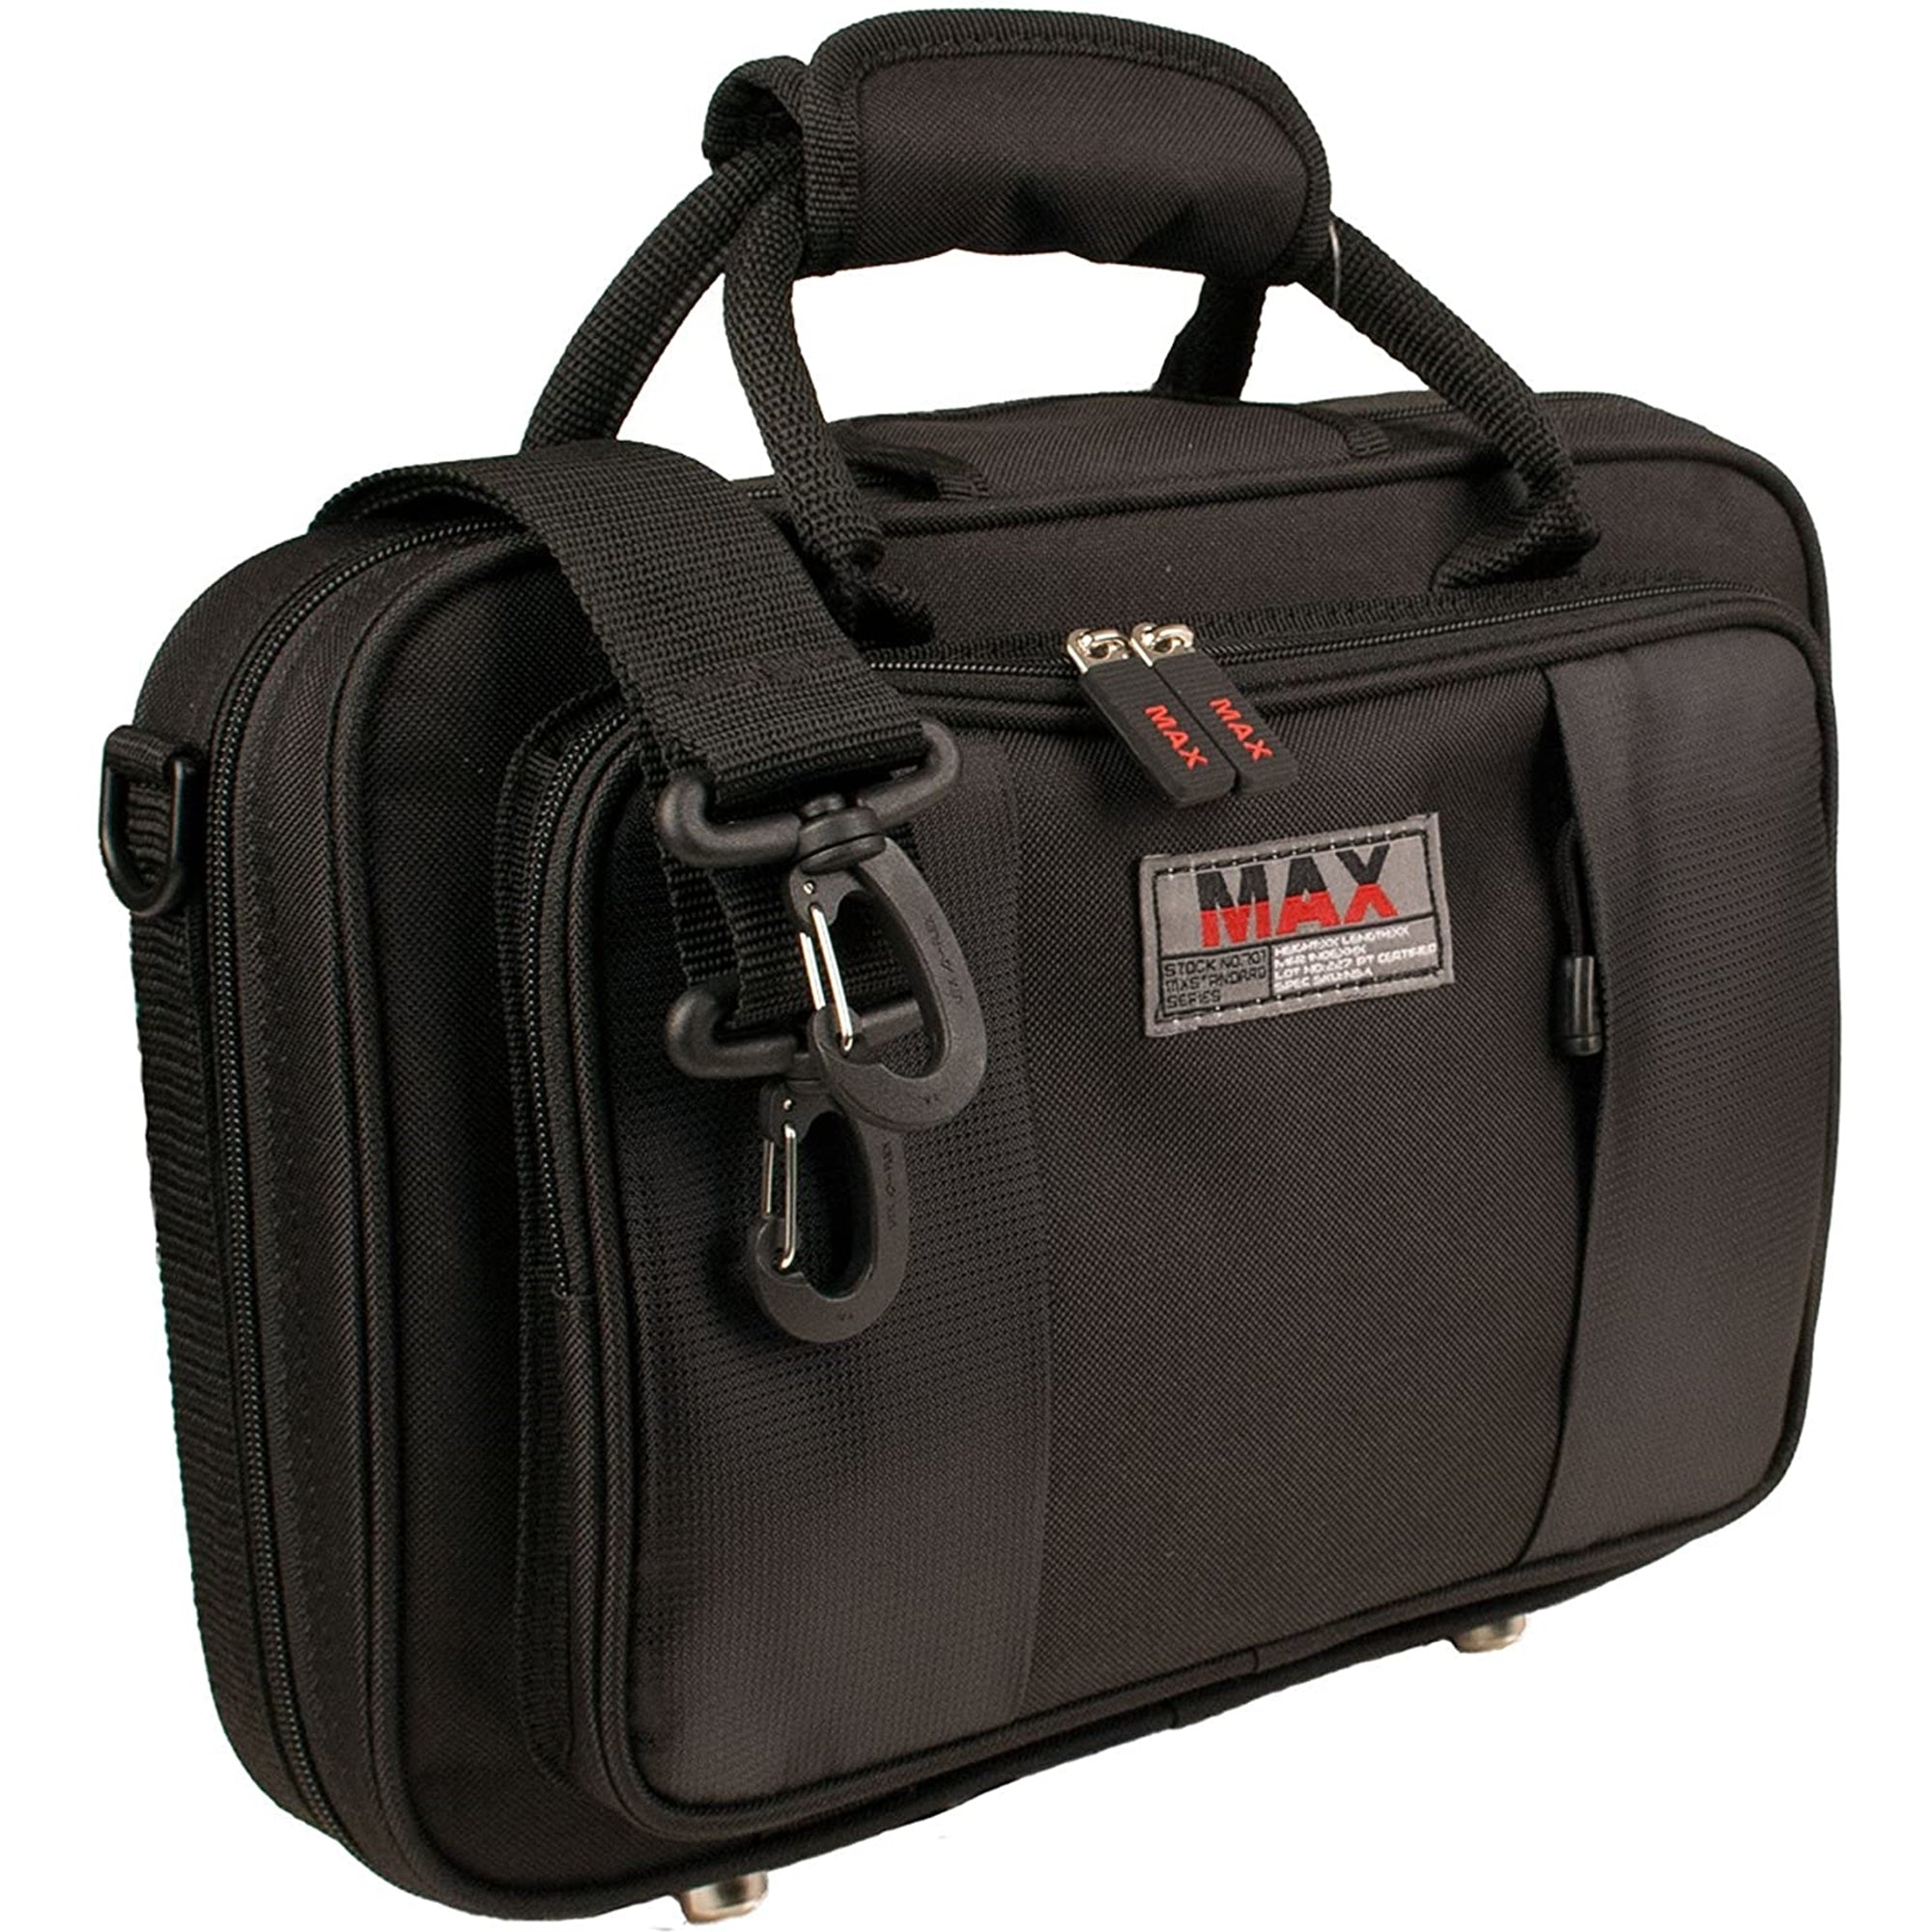 Protec MX307 Max Clarinet Case (Black)